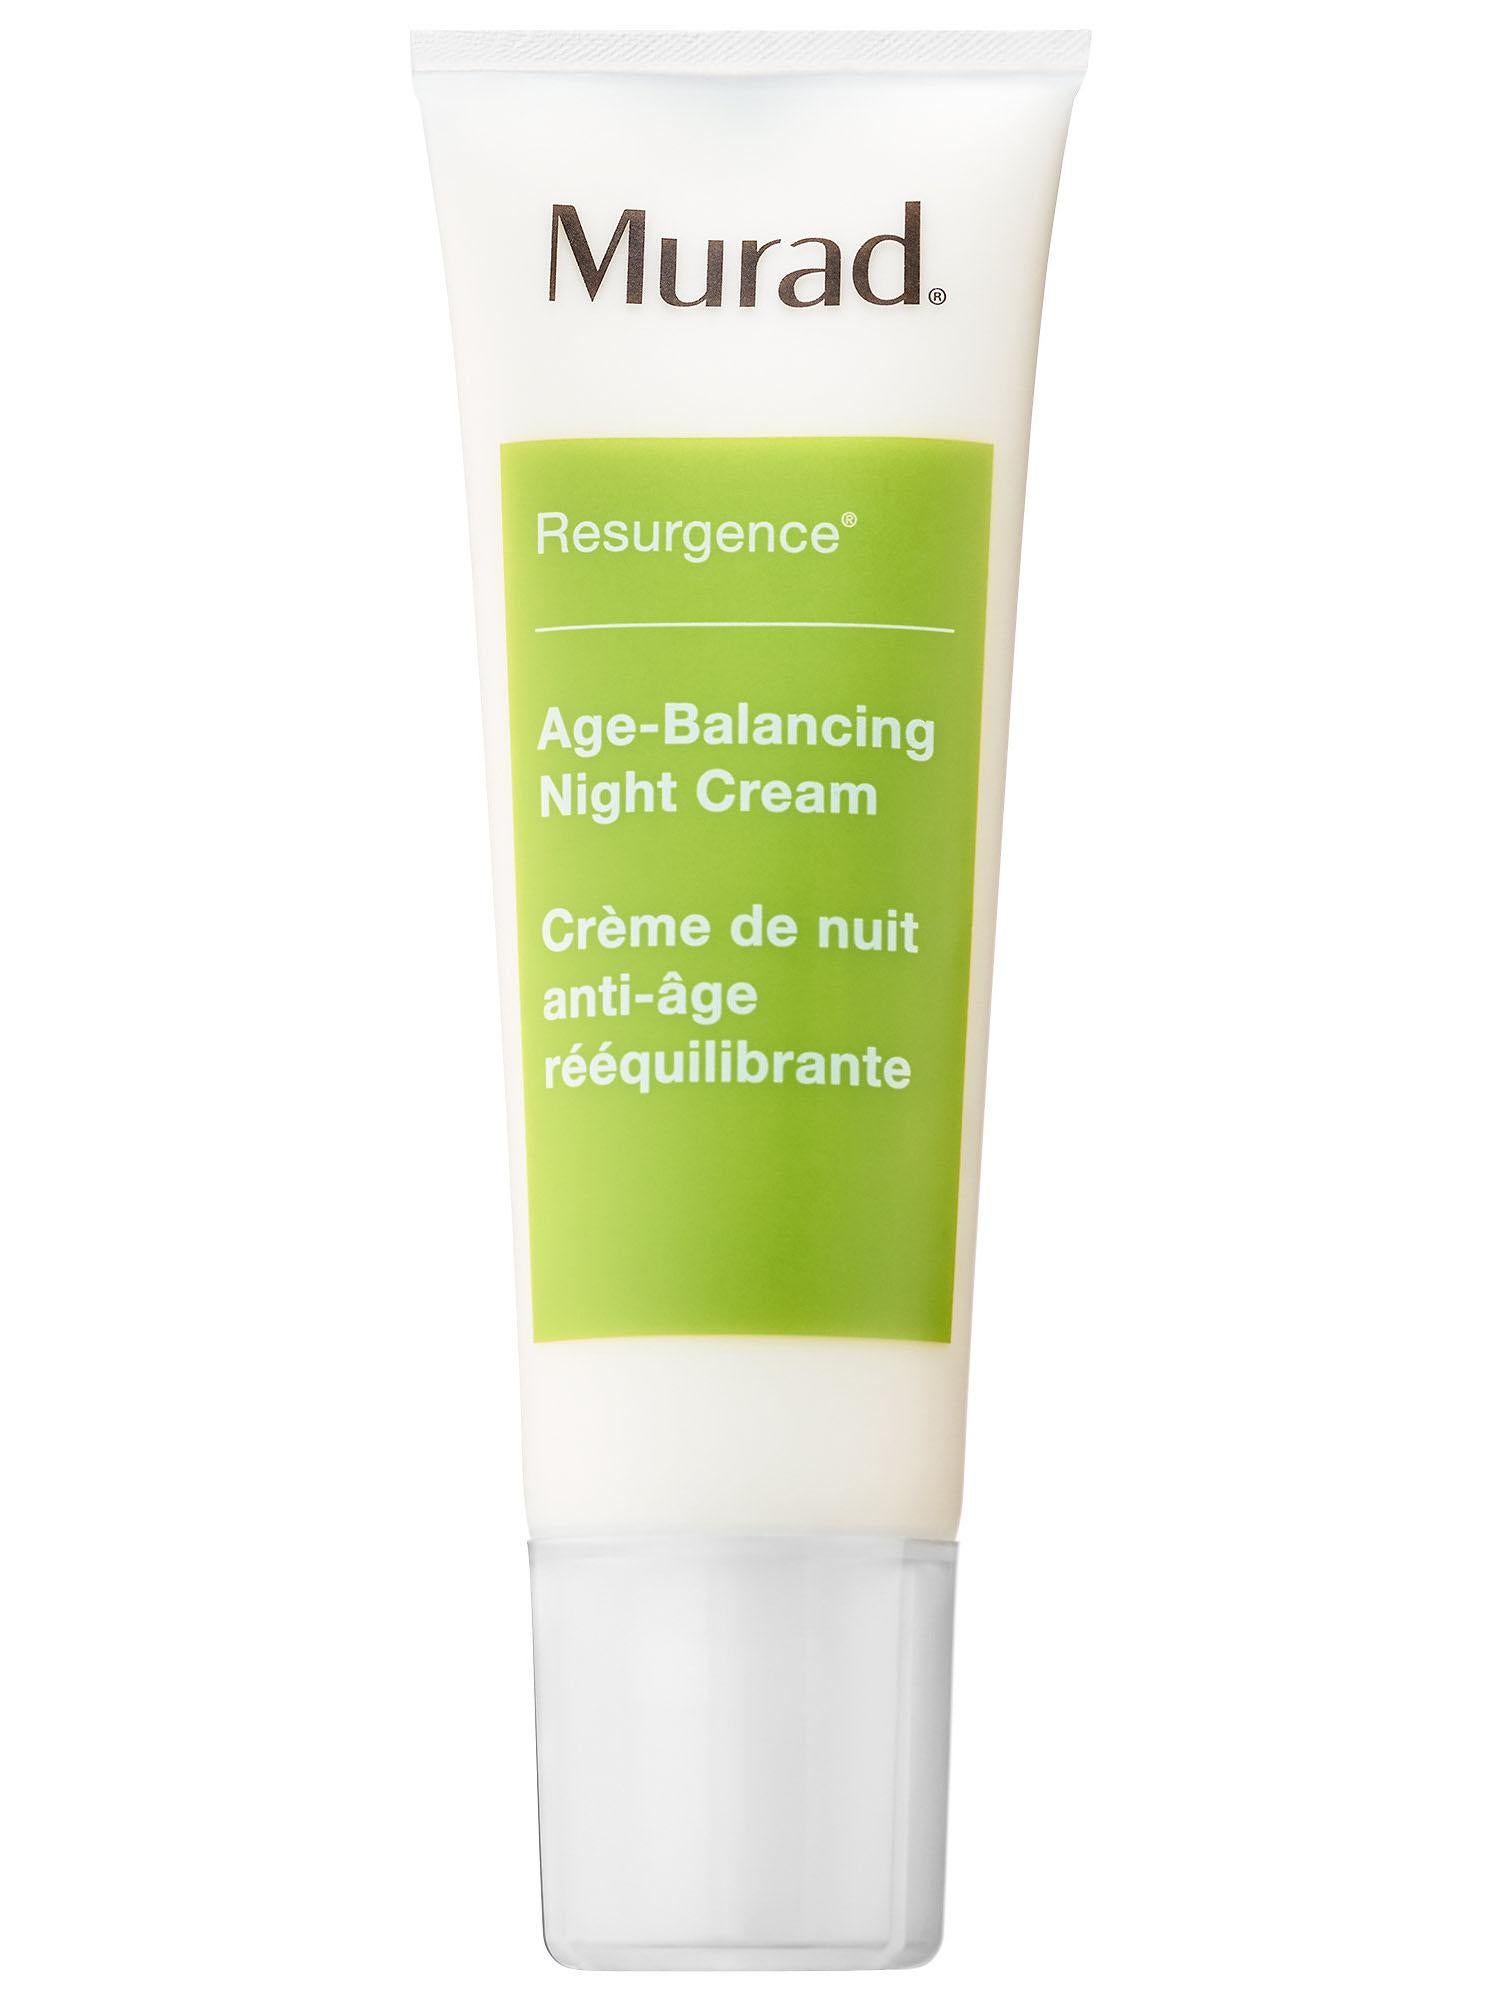 Murad Age Balancing Night Cream, £59.50, feelunique.com